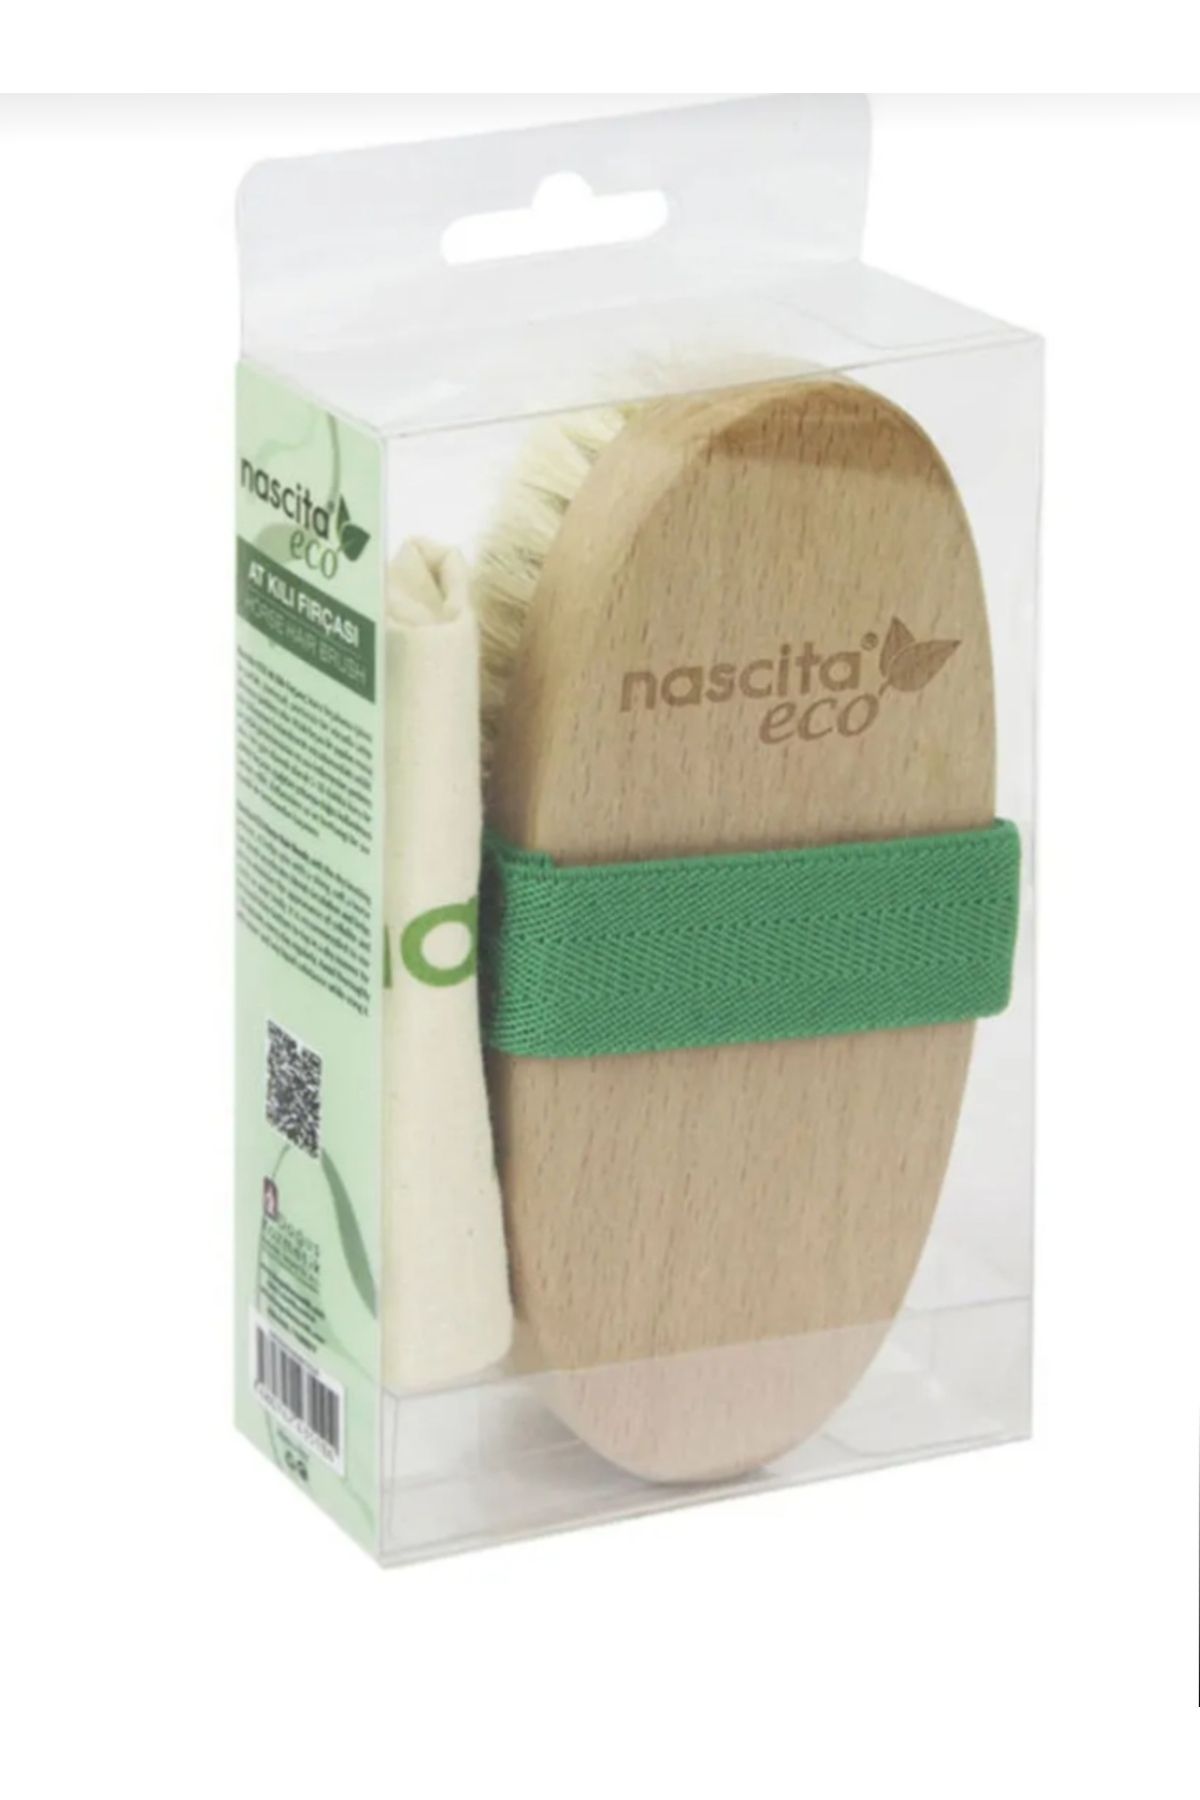 Nascita At kılı fırçası selülit fırçası Nastica Eco 12 Yeşil